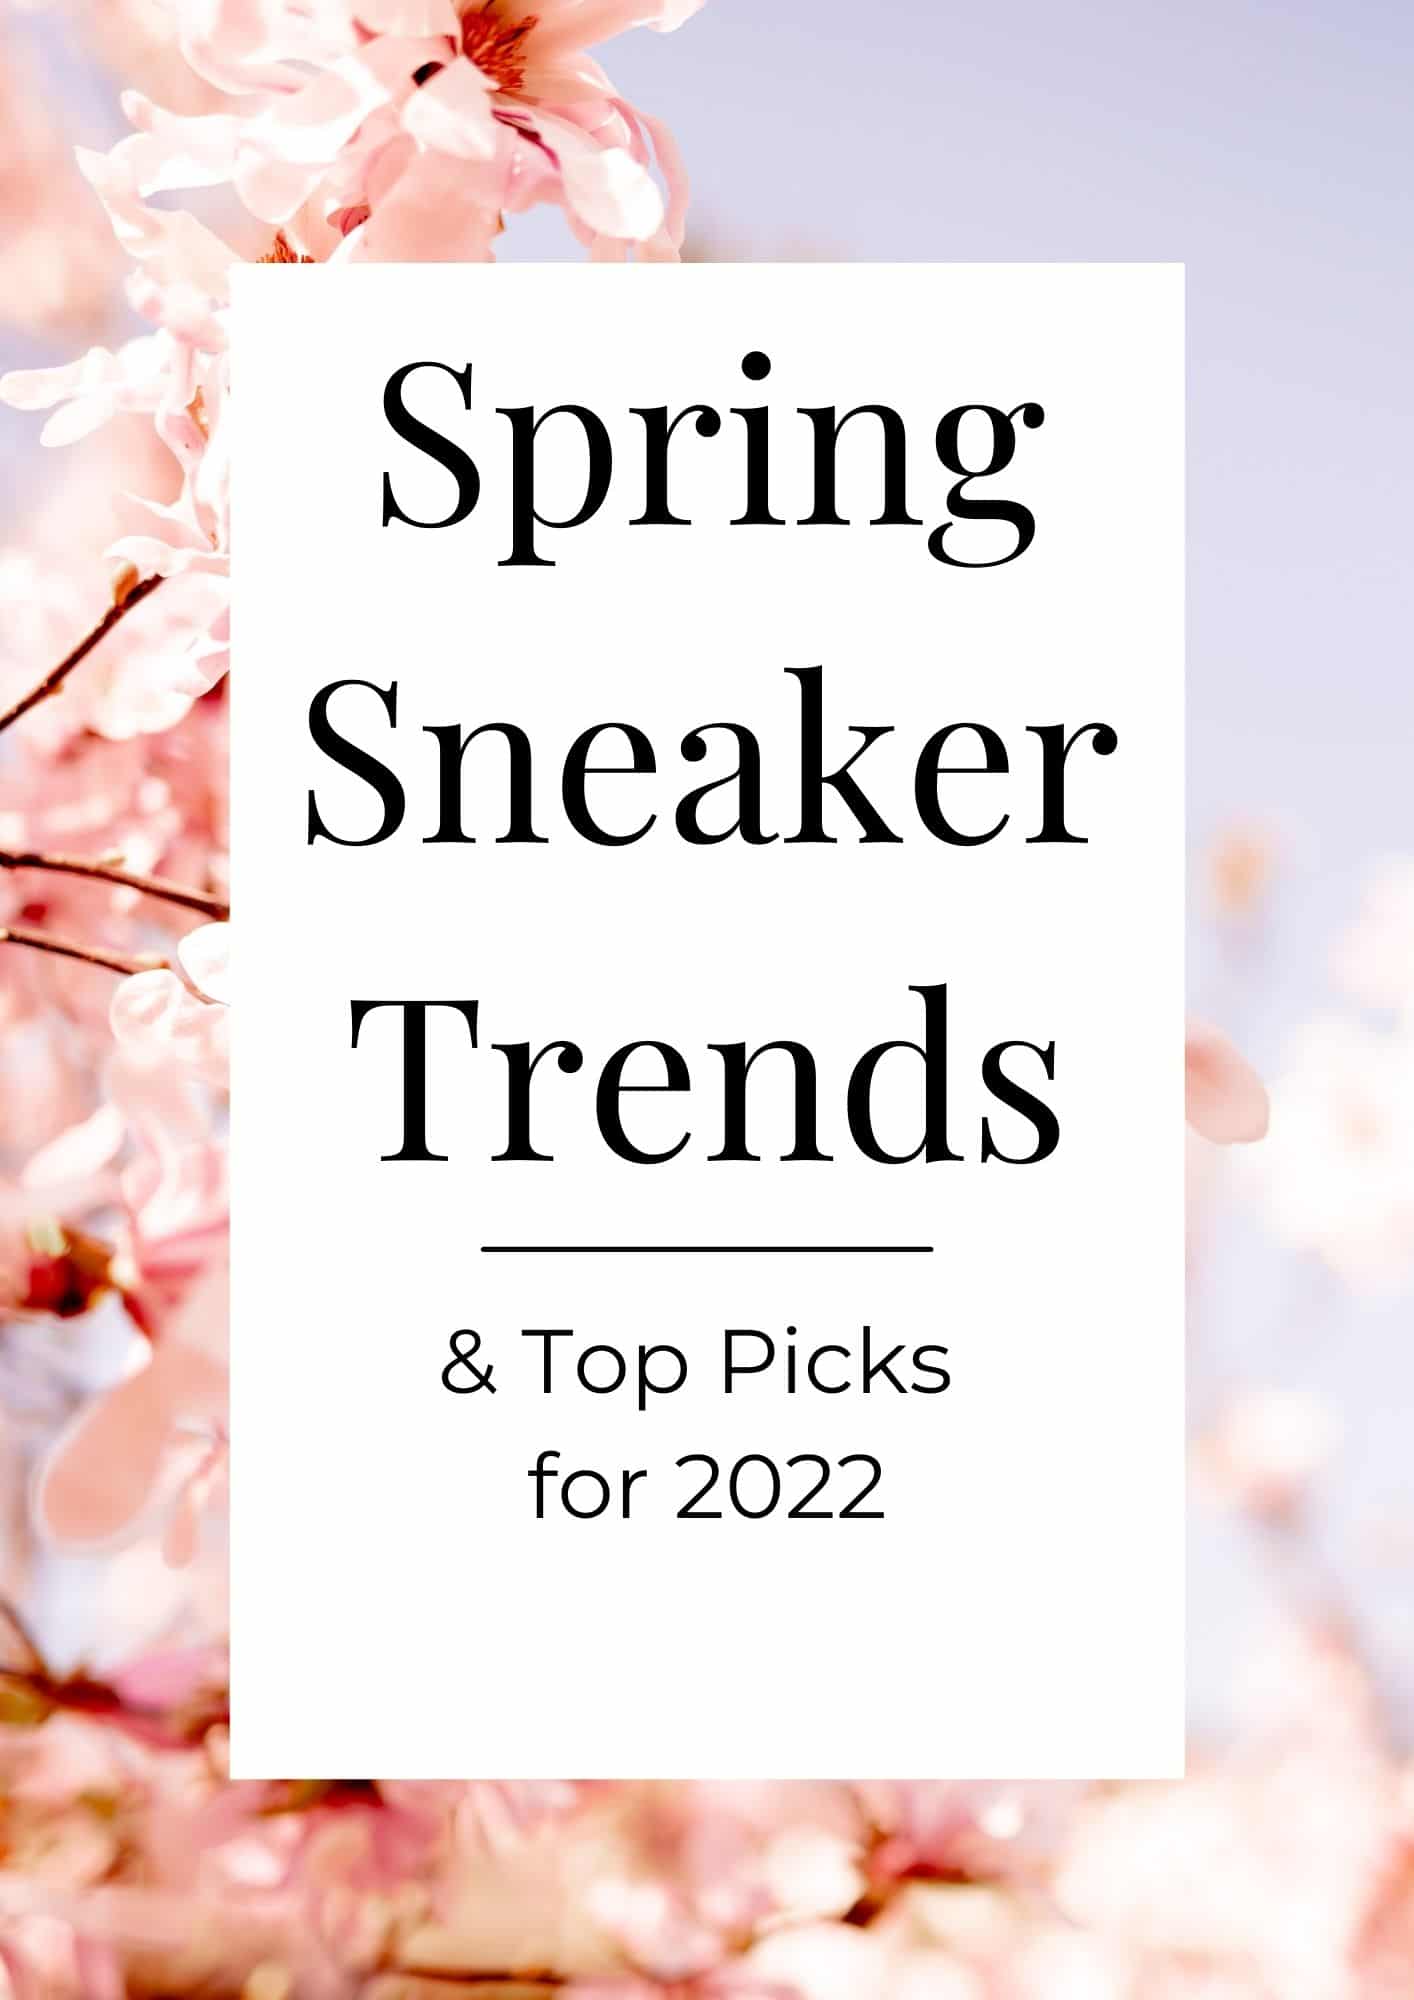 Spring Sneaker Trends for 2022